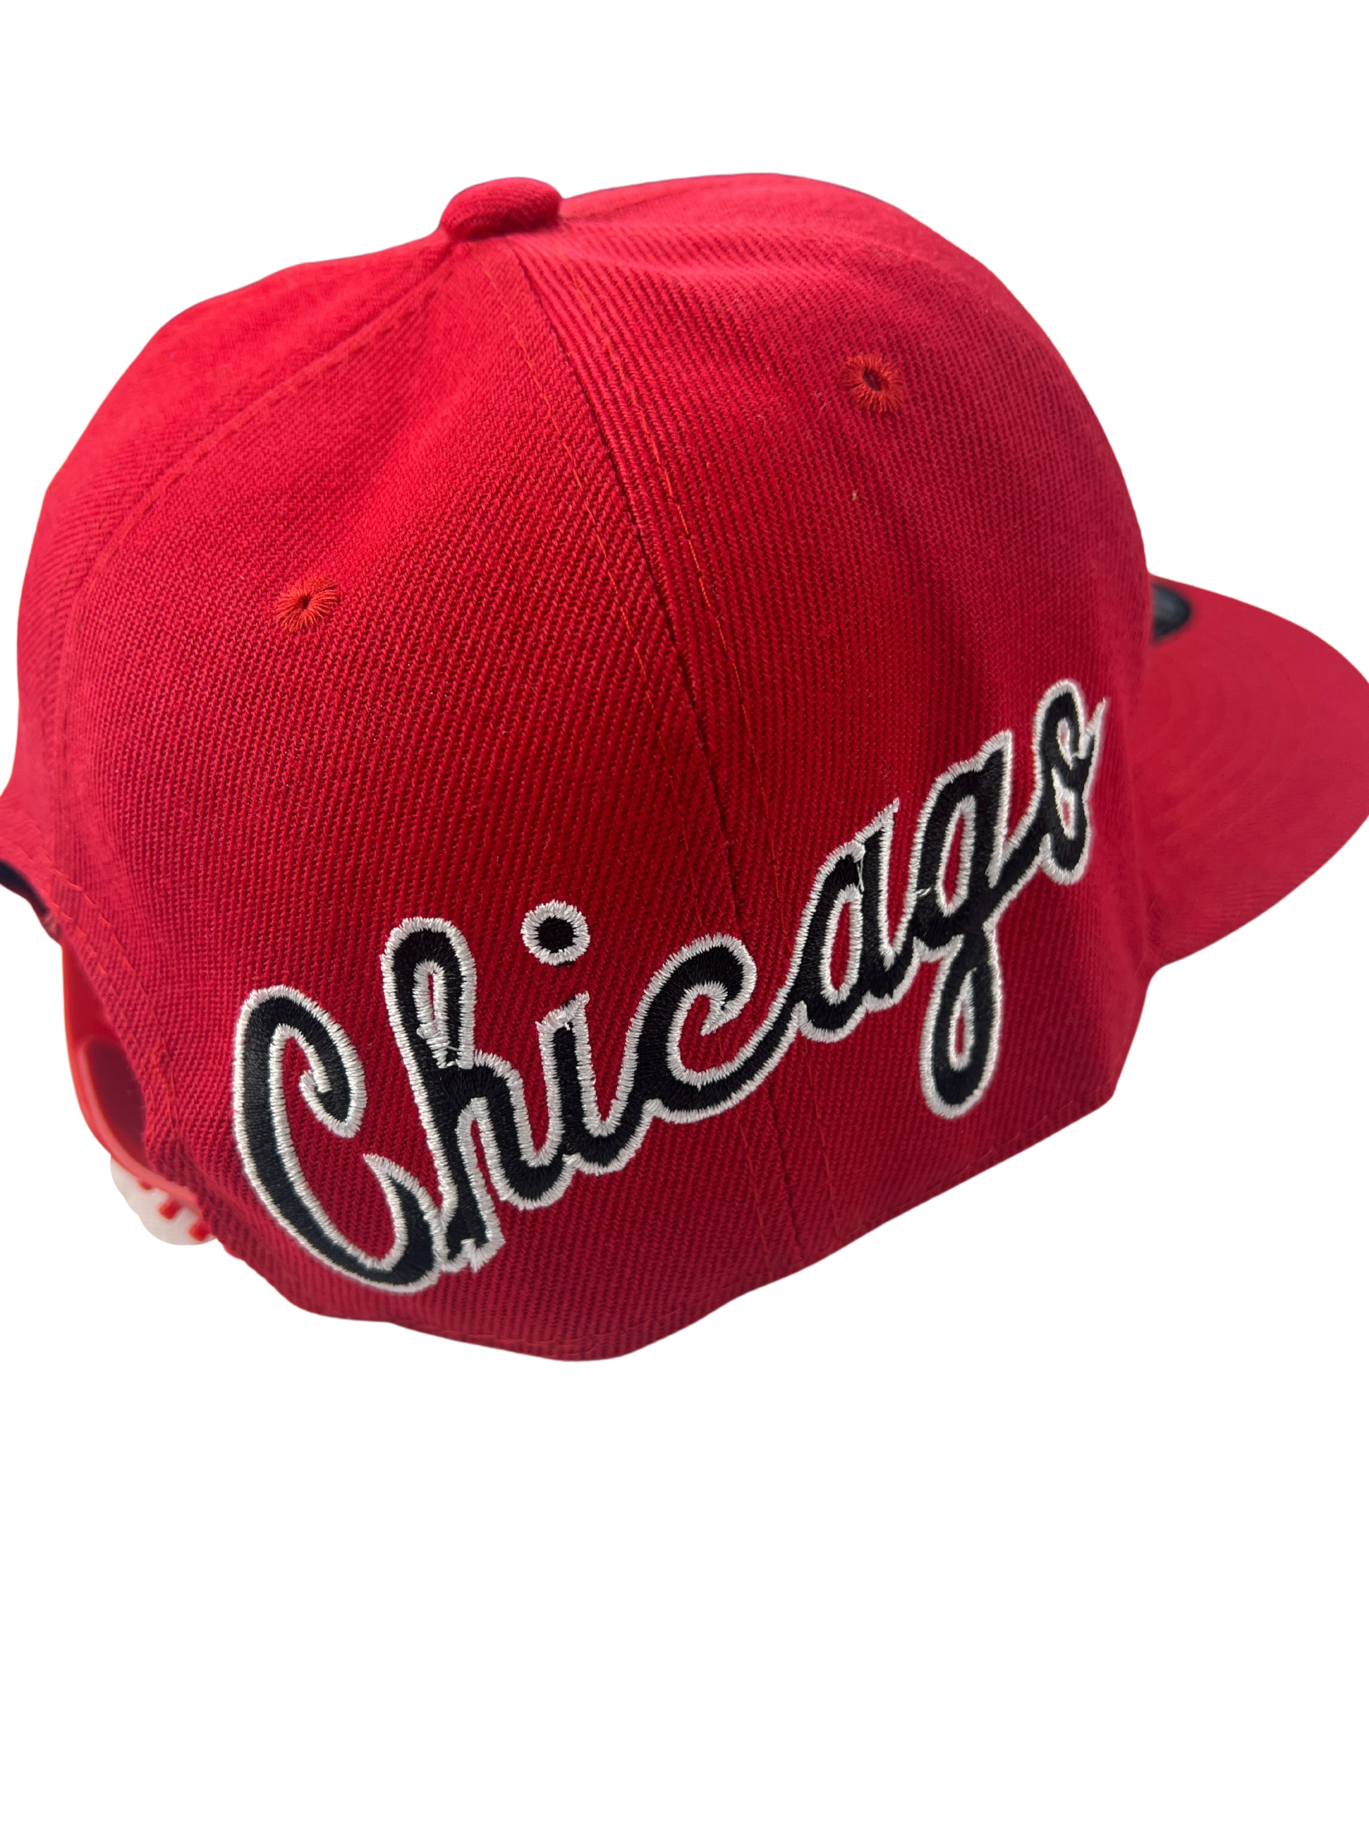 Chicago Bulls Red Cap